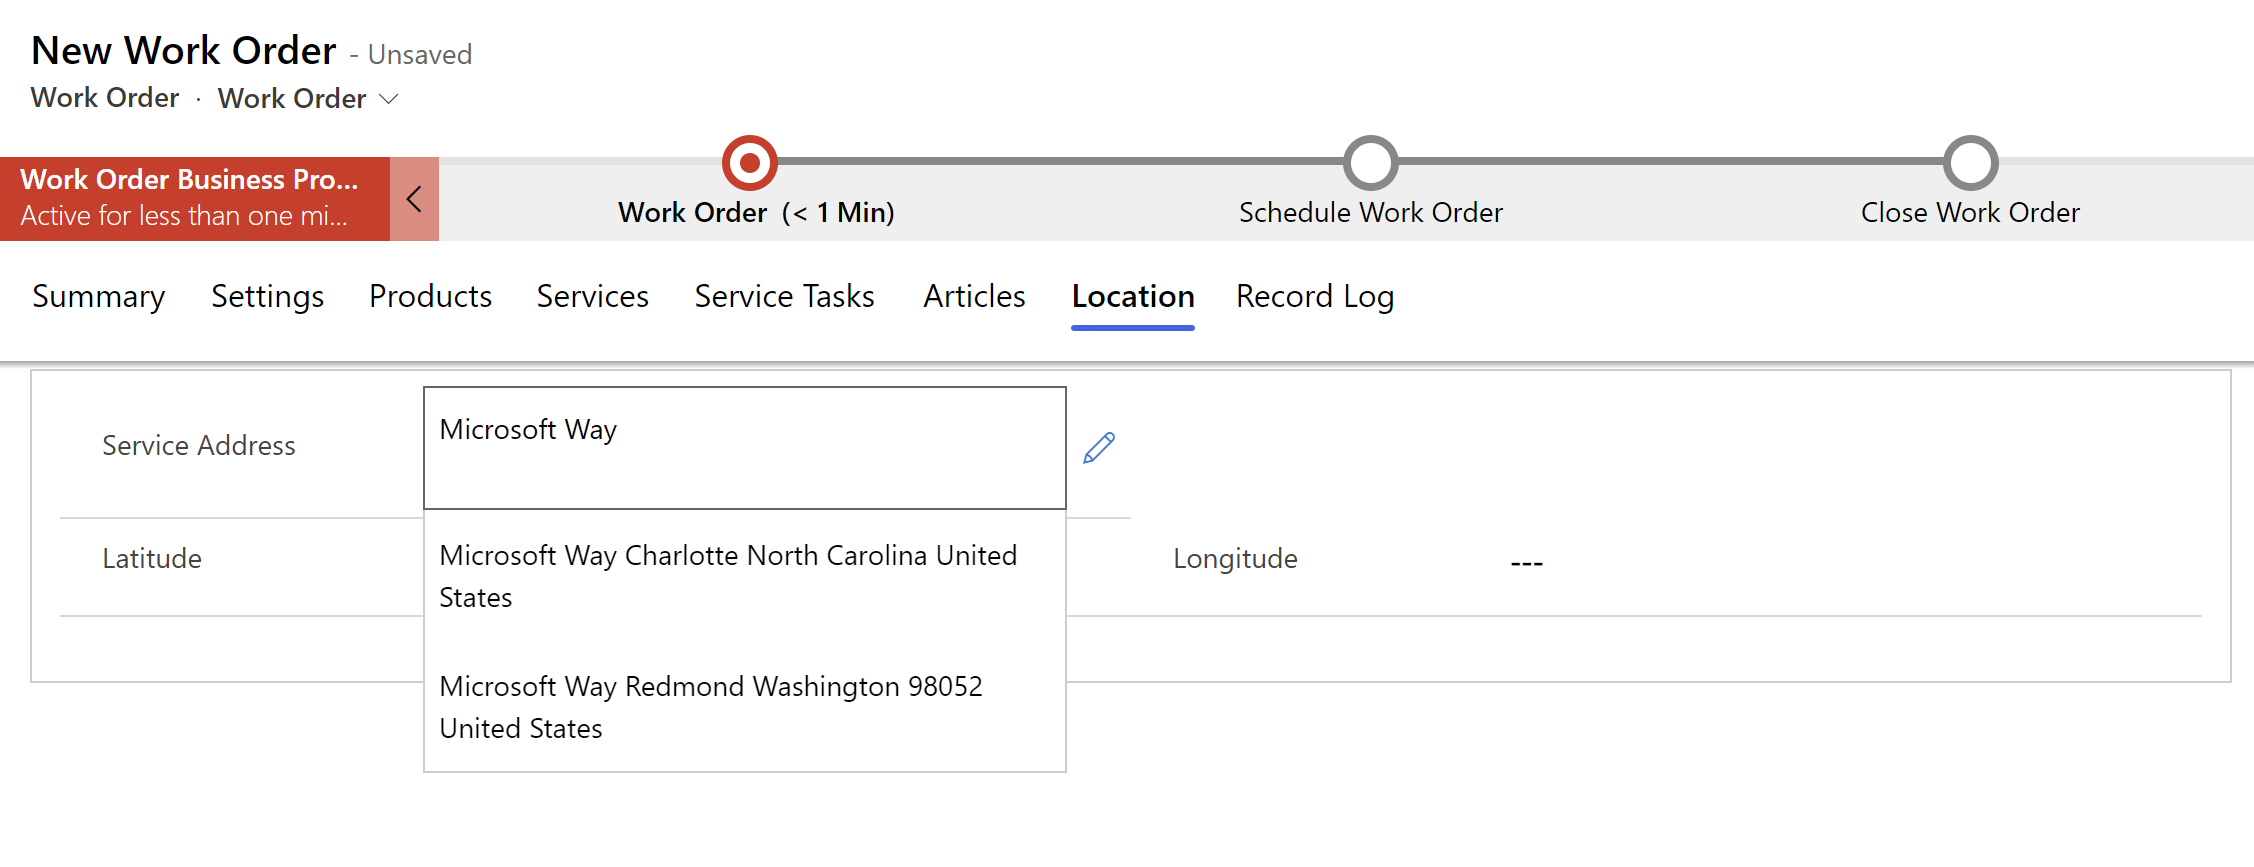 Captura de pantalla de una nueva orden de trabajo en Field Service, que muestra sugerencias de direcciones en un menú desplegable.